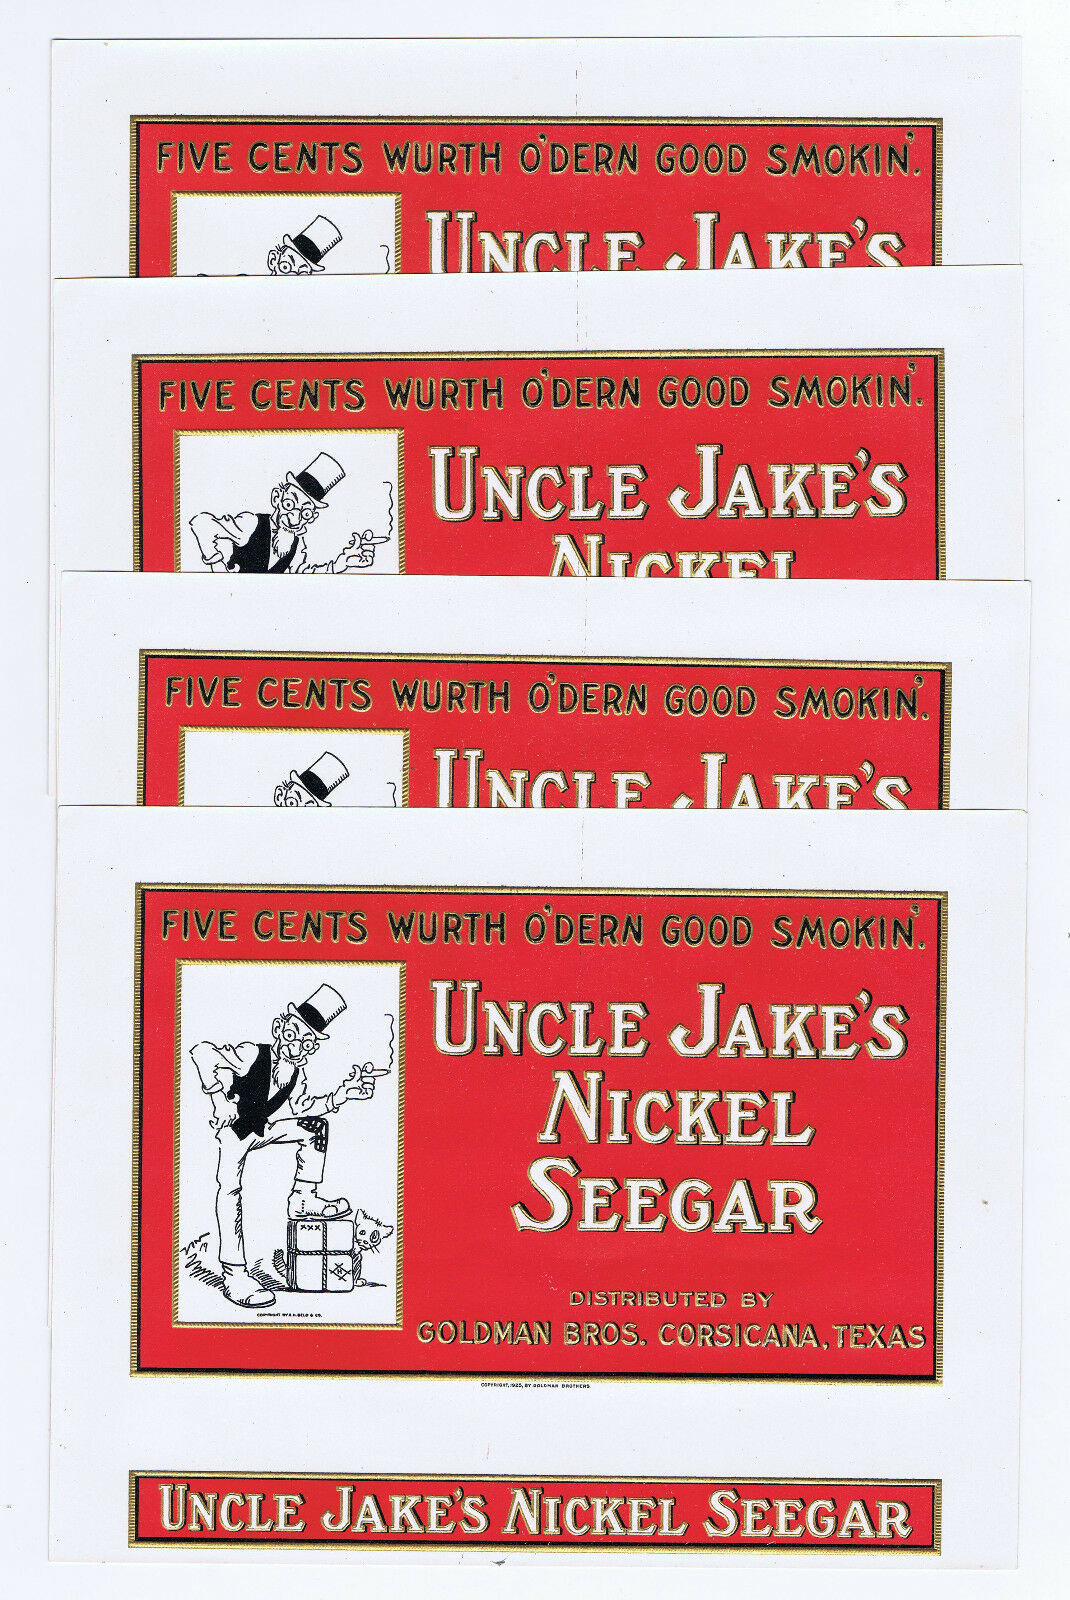 WHOLESALE 8 UNCLE JAKE'S NICKEL SEEGAR EMBOSSED 1925 INNER BOX LABEL JUDAICA